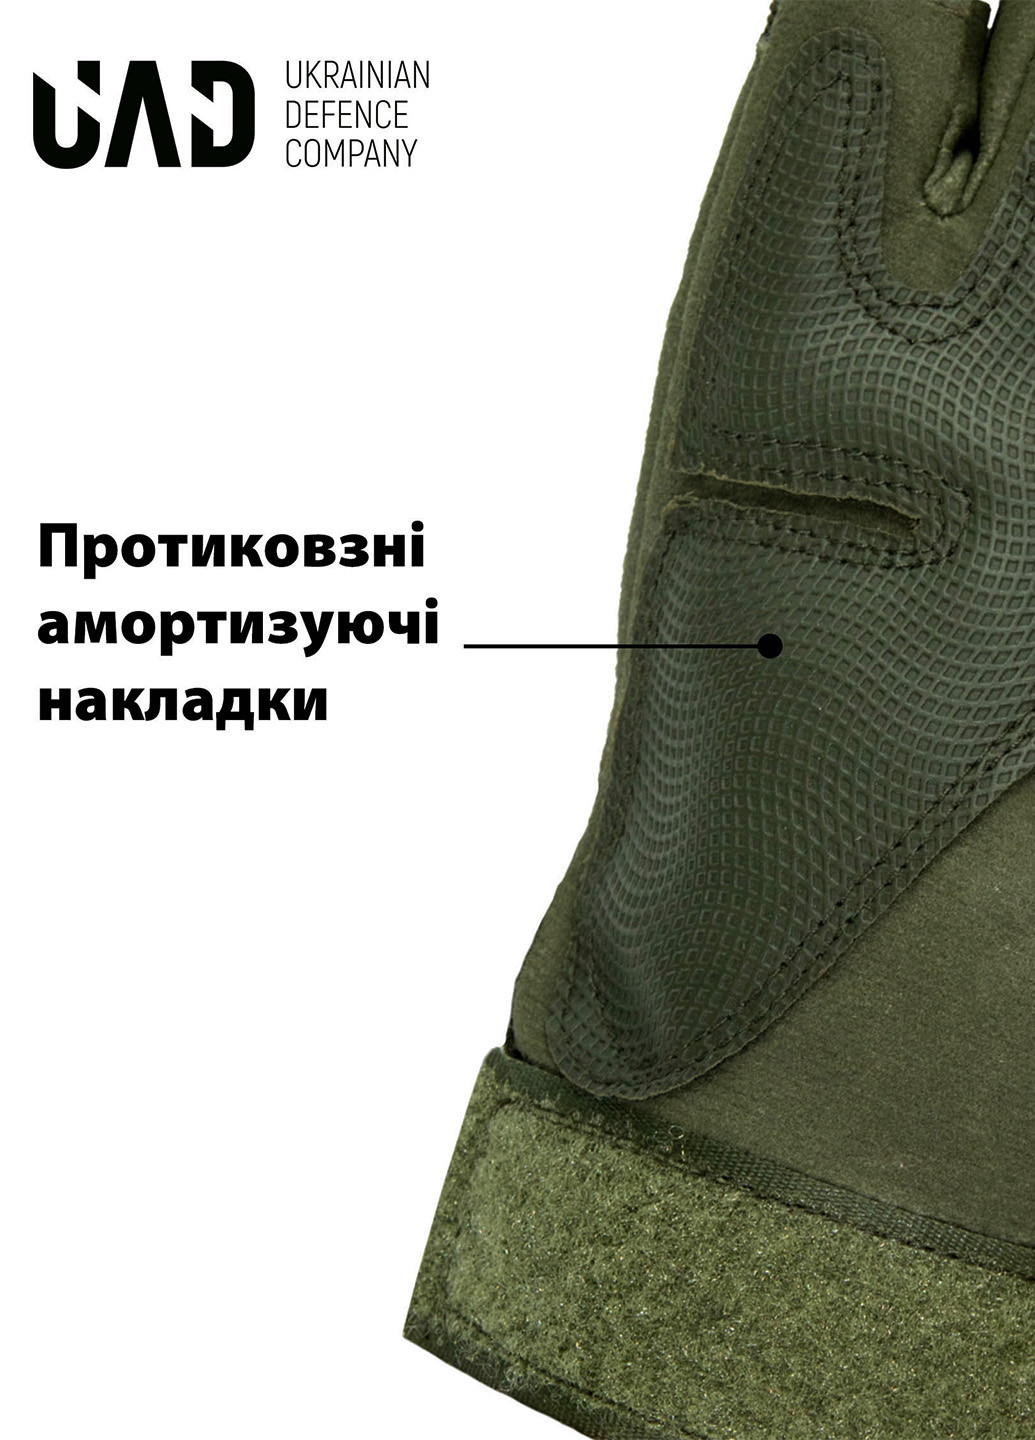 Перчатки тактические ЗЕВС короткопалые с защитой Олива UAD (258814103)